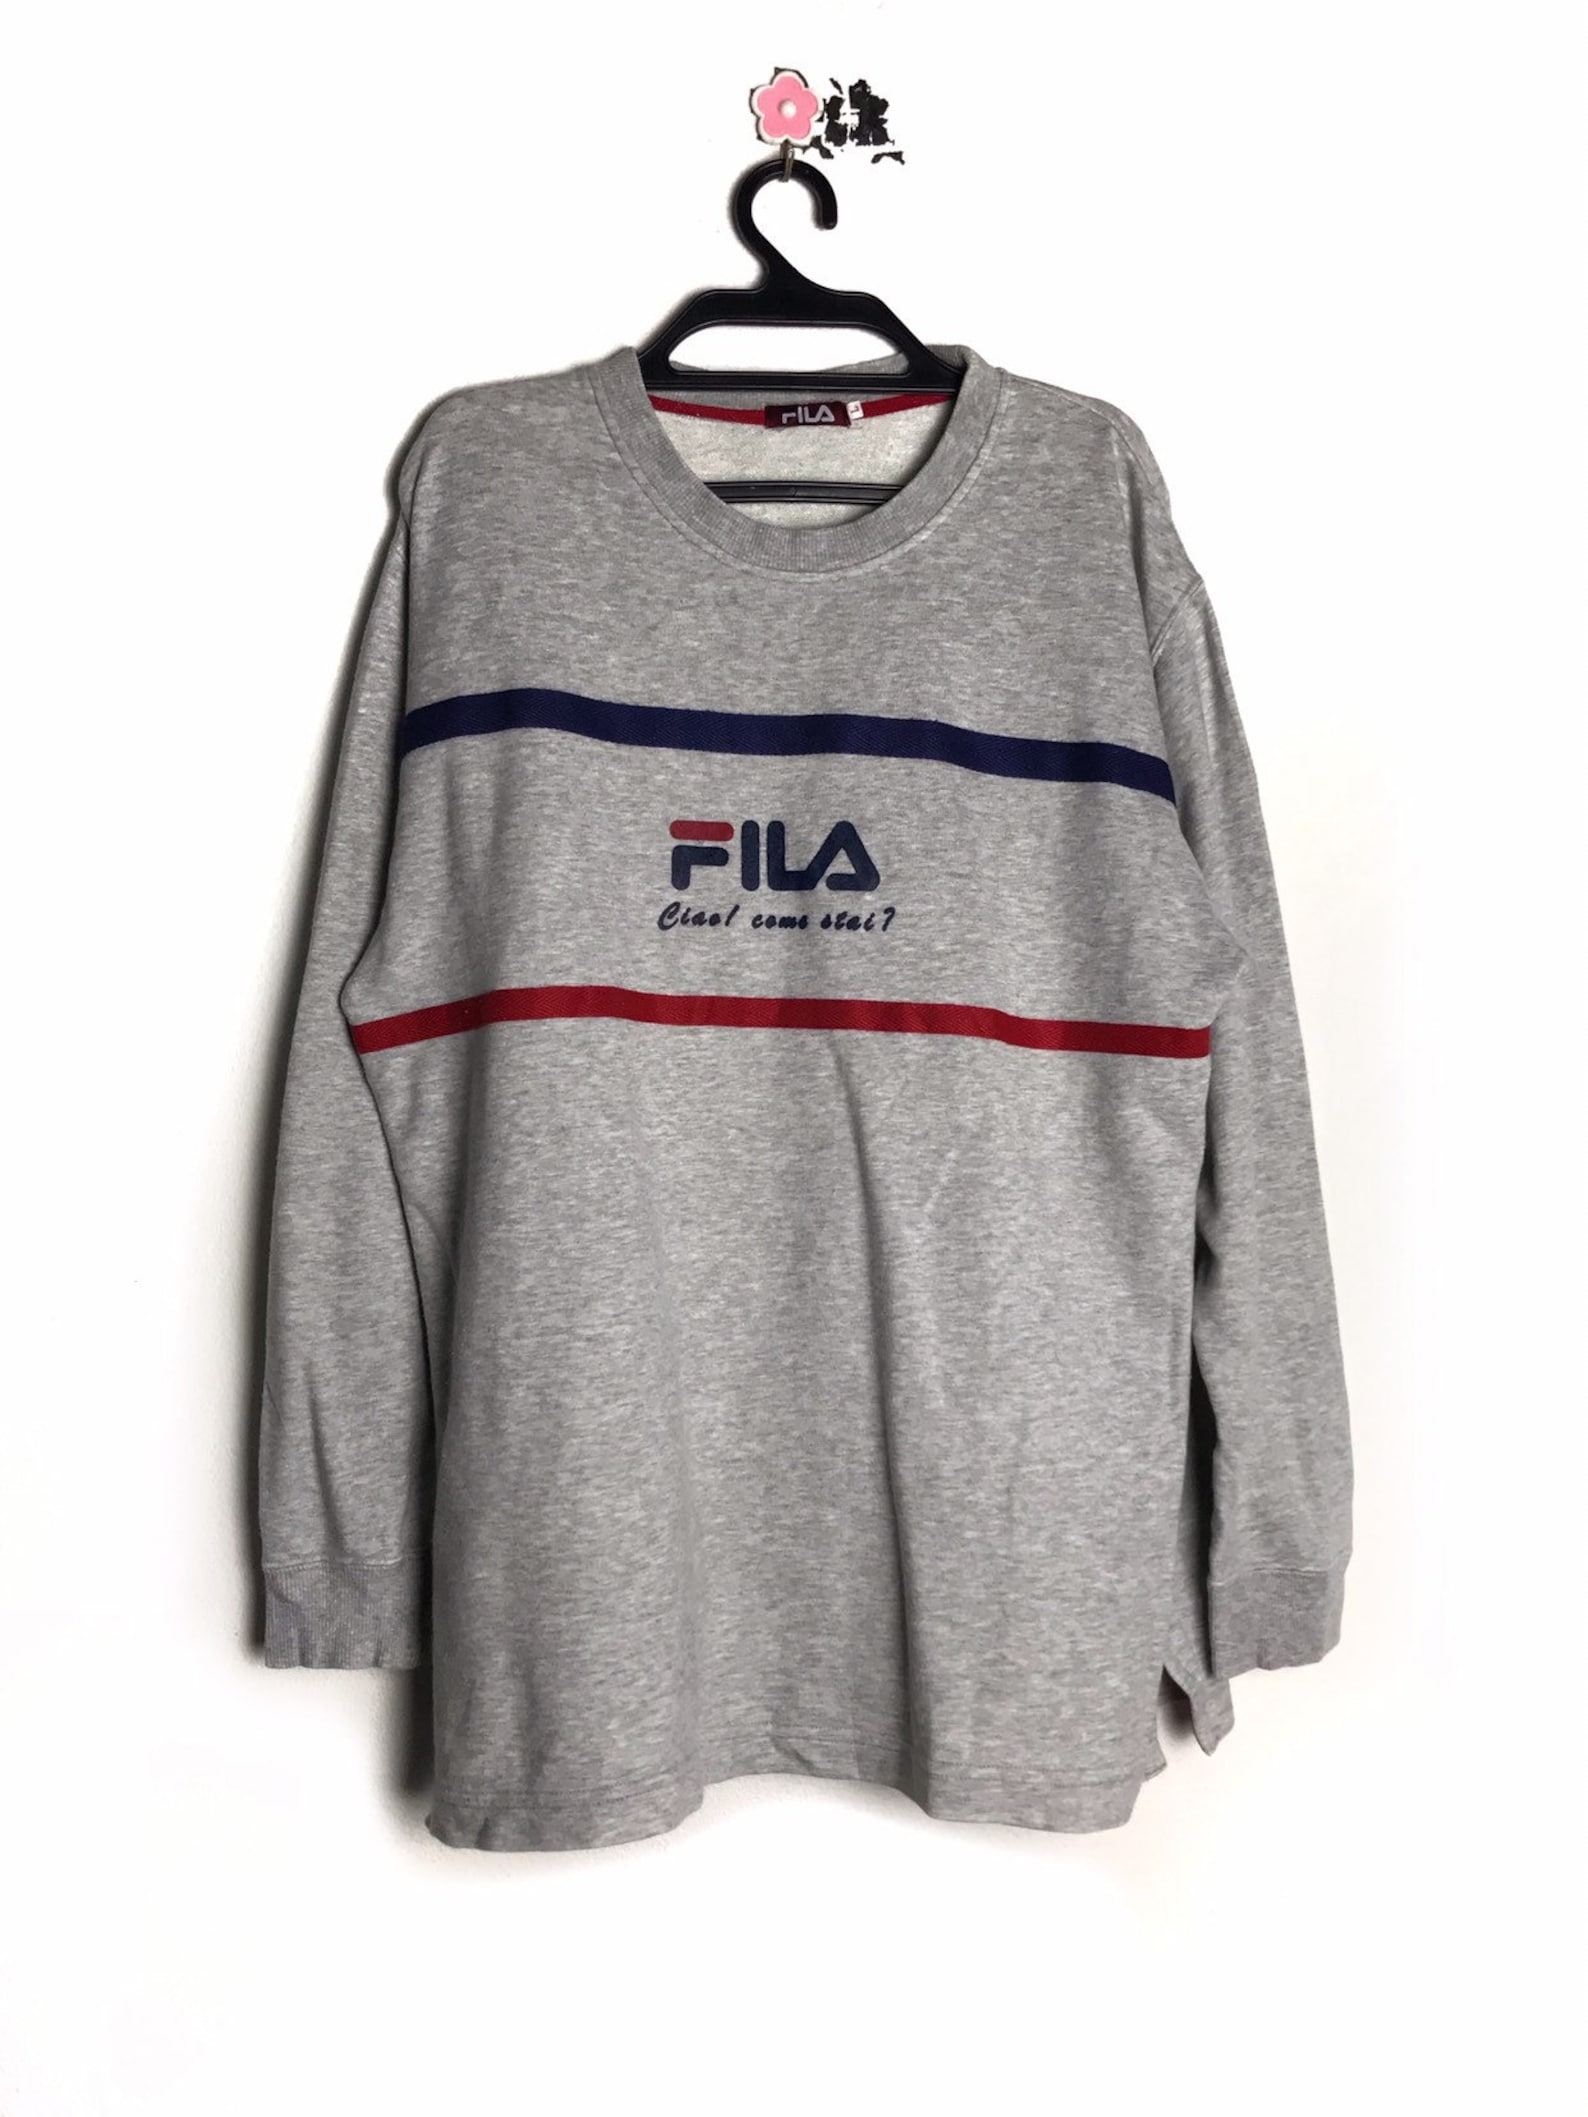 90s vintage Fila long sleeves tshirt | Etsy